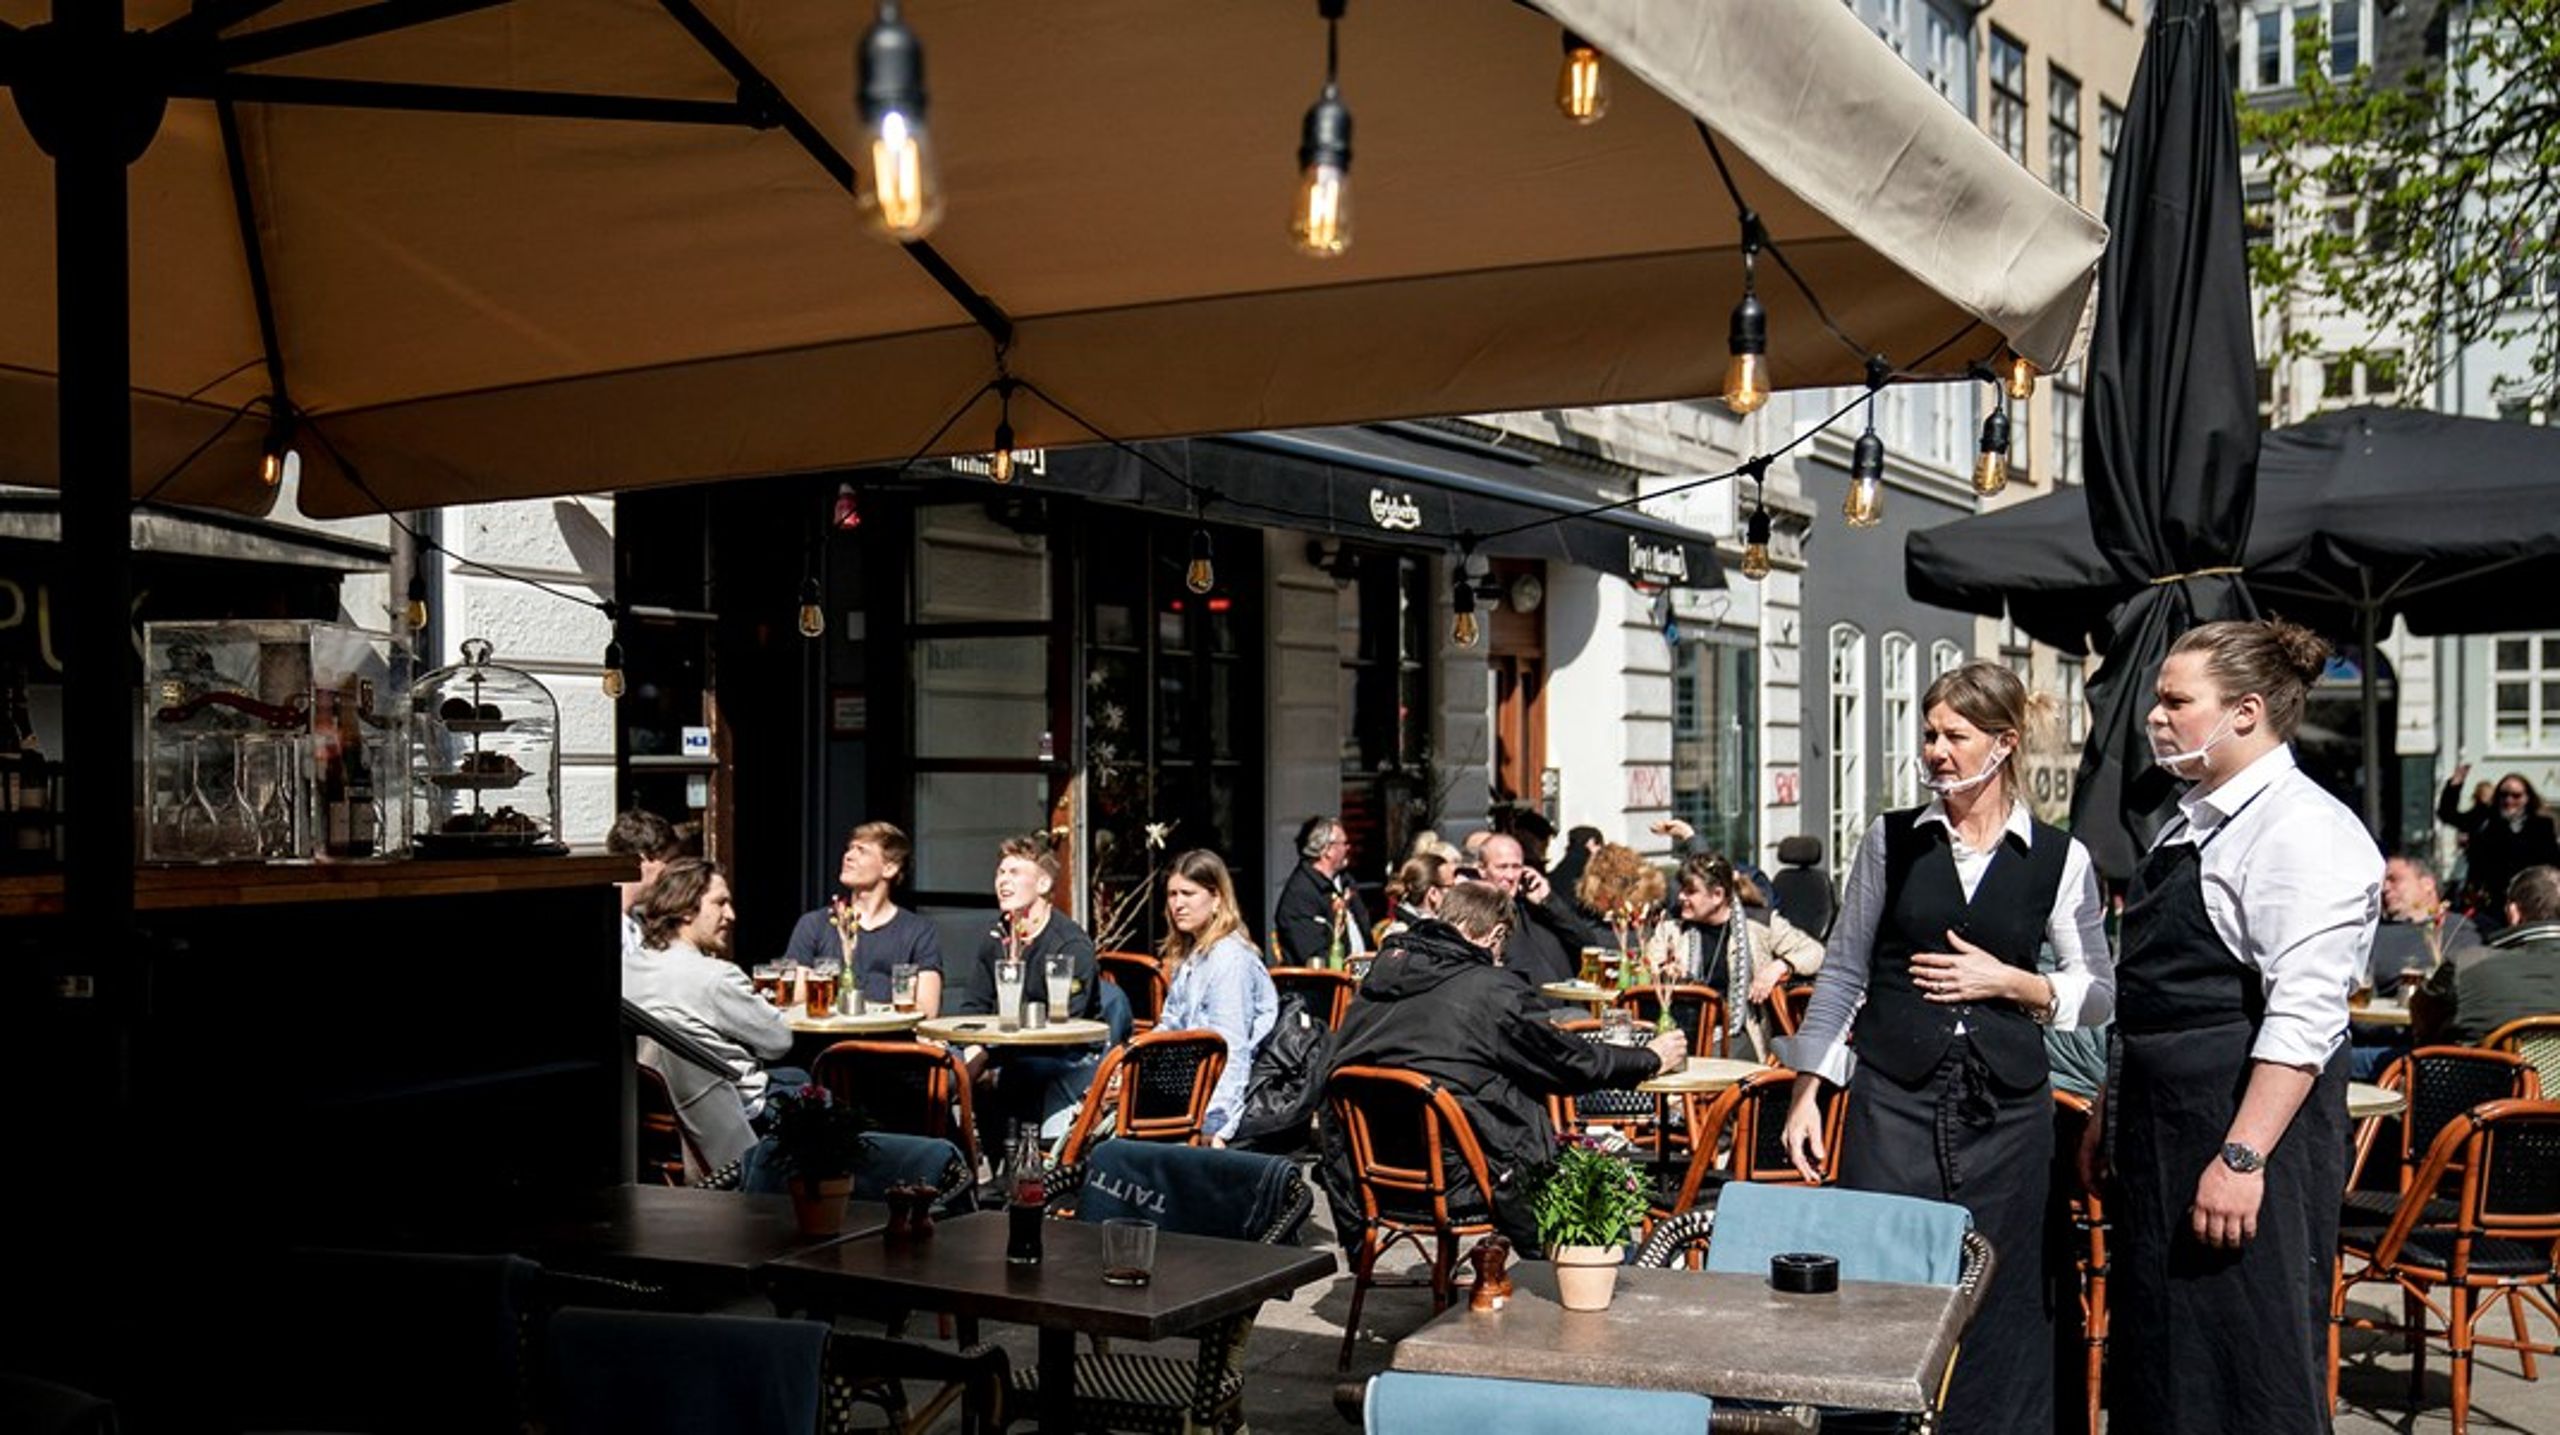 Restauranter i København mangler arbejdskraft. Det vil politikerne på Rådhuset løse med nyt forslag, der skal sende ledige akademikere i praktik på restauranter.&nbsp;